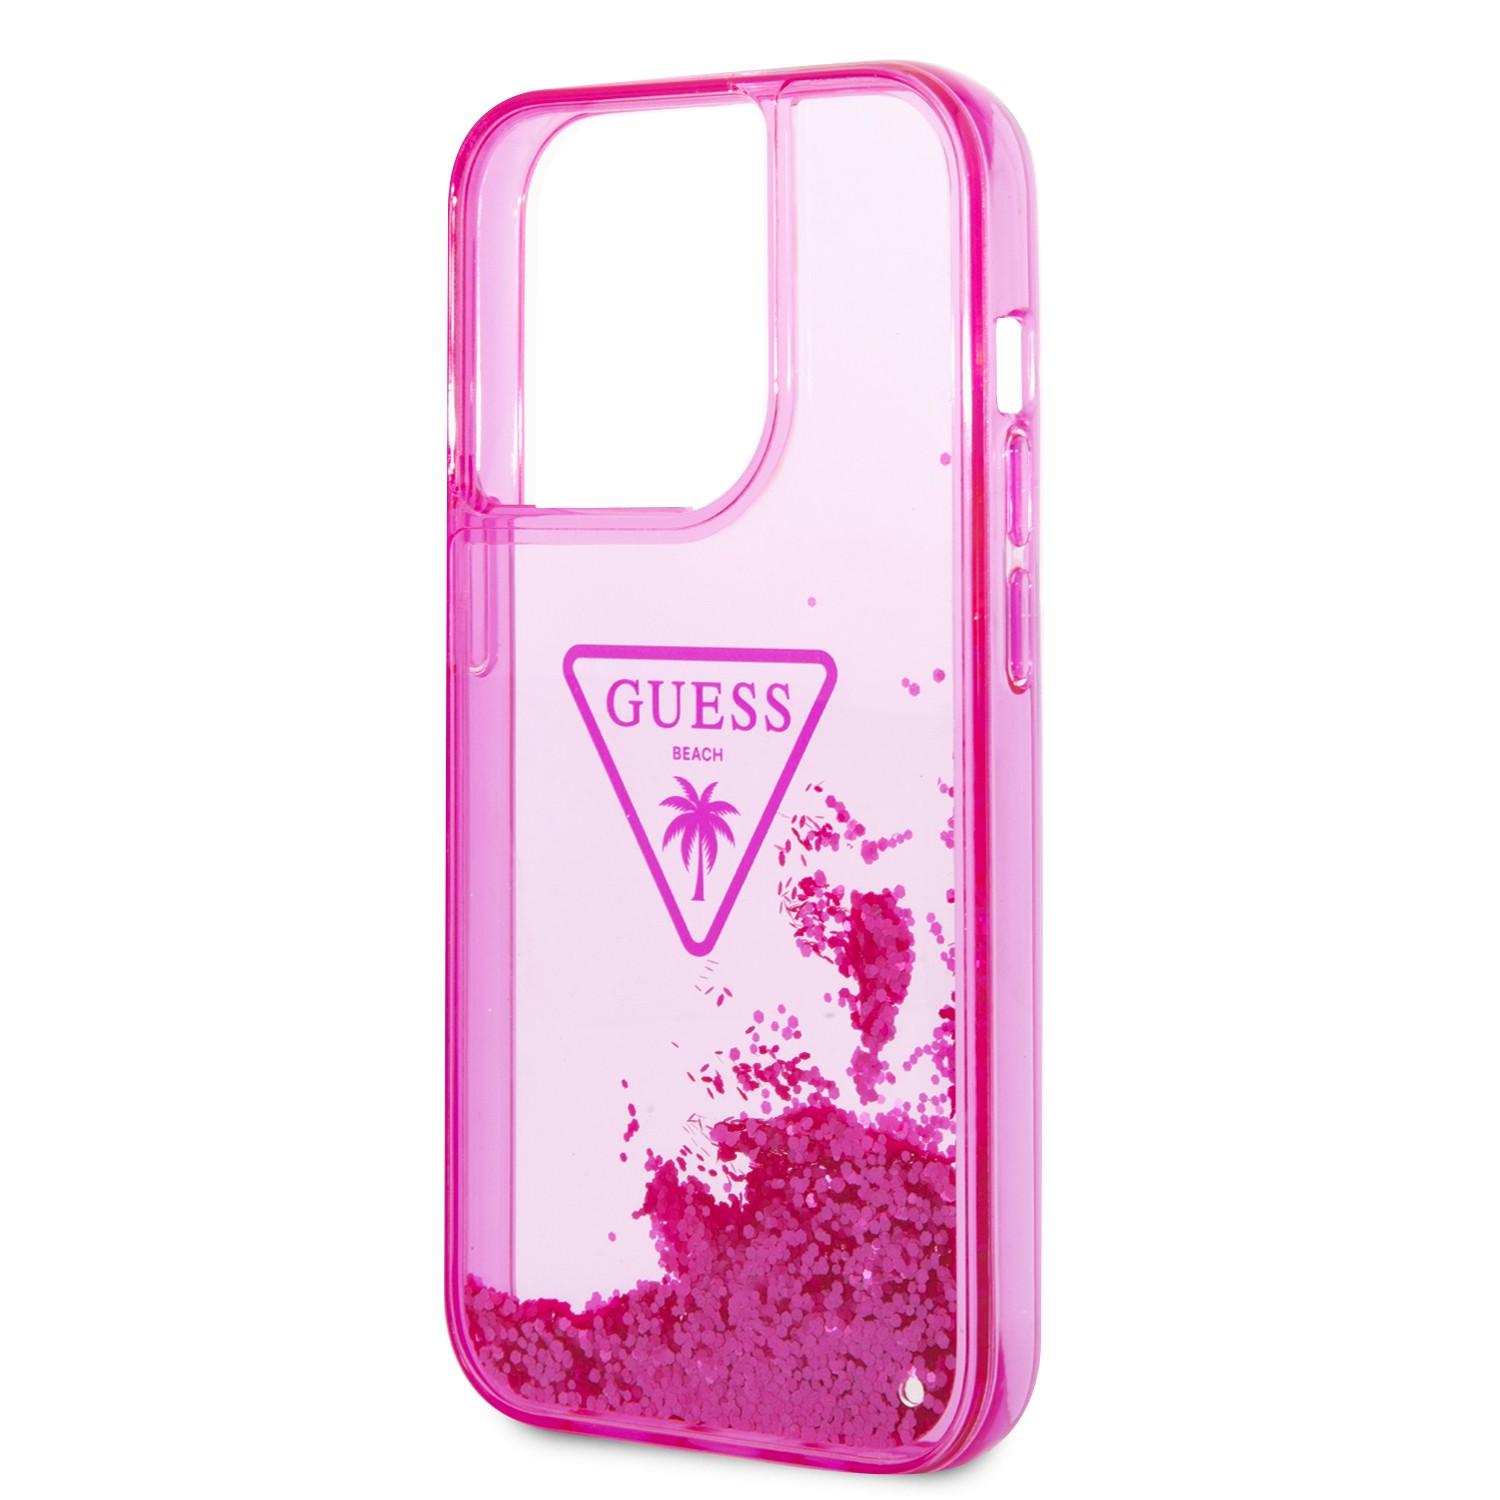 كفر ايفون 14 برو زهر جيس Guess Liquid Glitter Case With Translucent Triangle Logo For iPhone 14 Pro Pink - cG9zdDoxMzg0OTM3